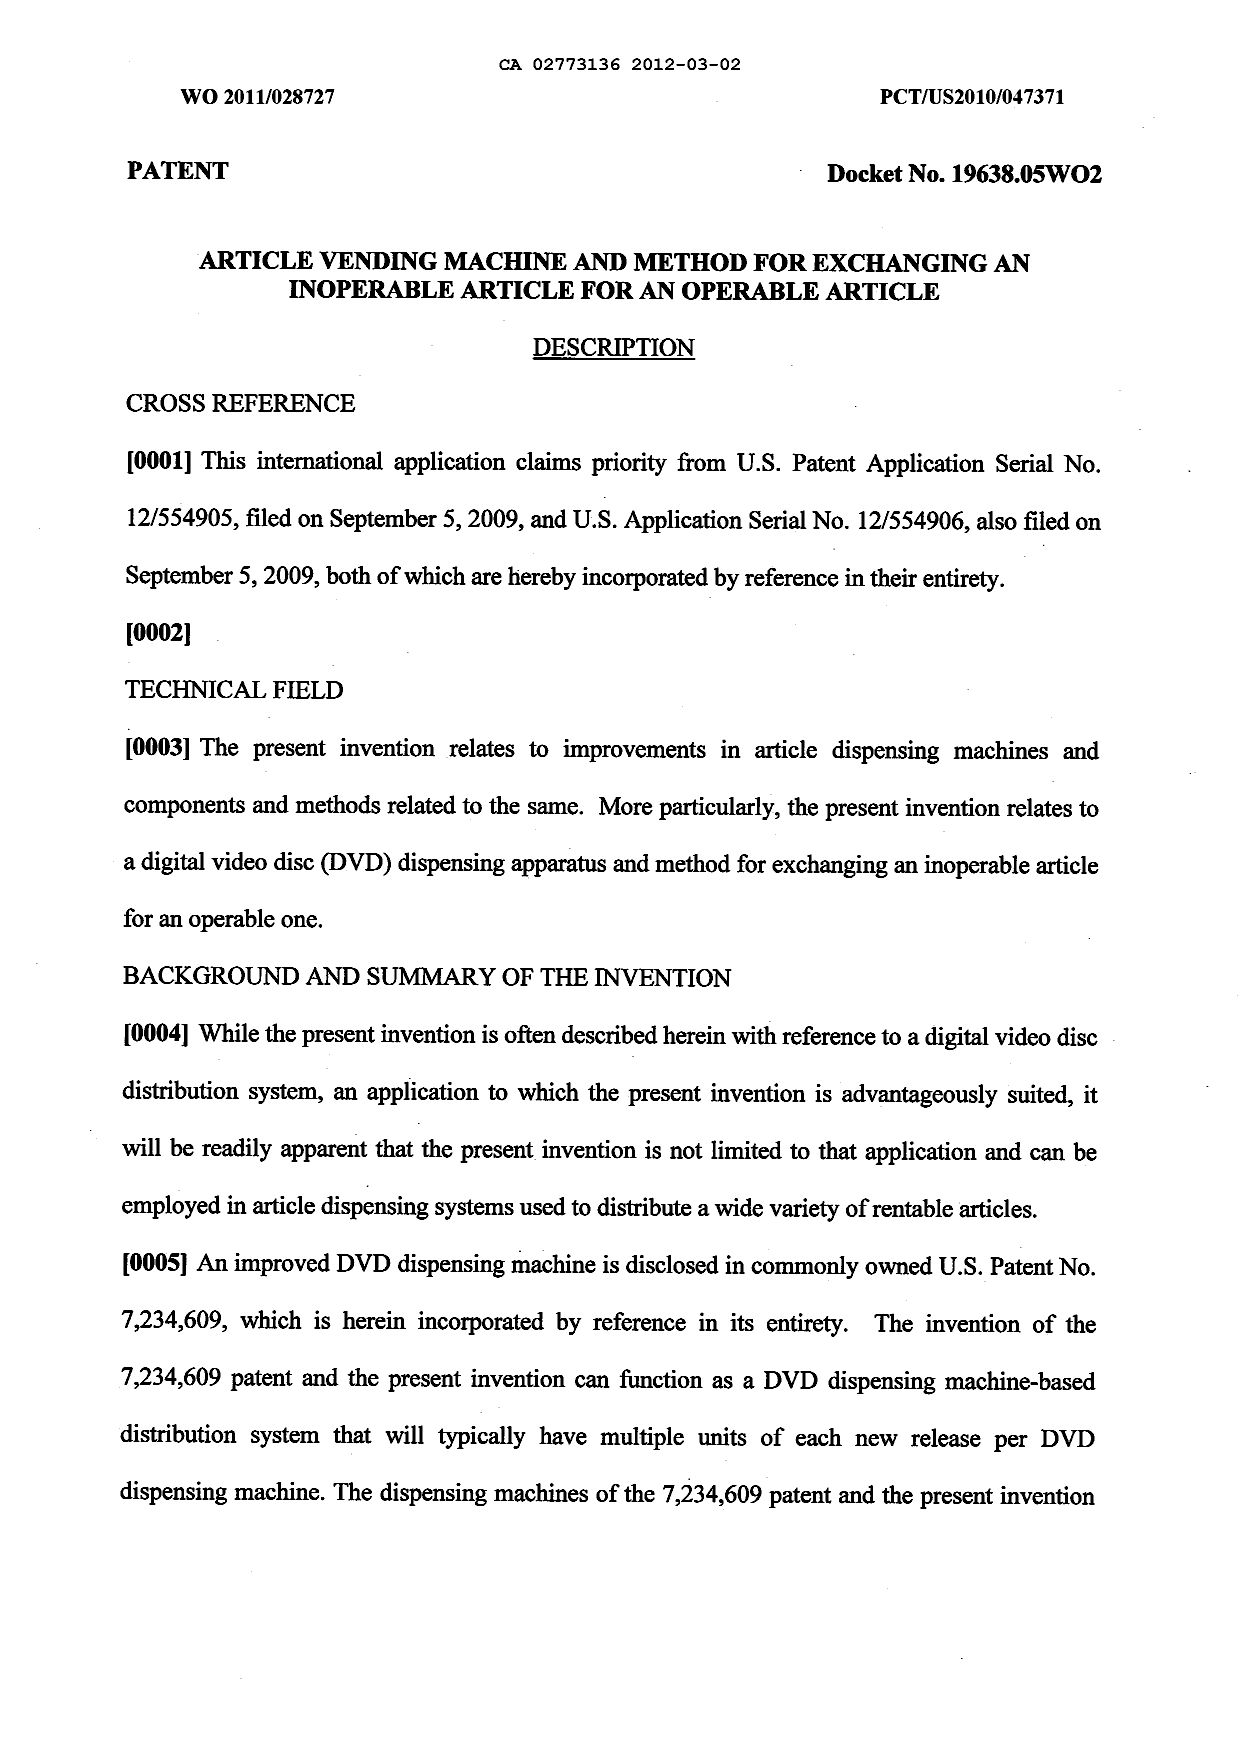 Canadian Patent Document 2773136. Description 20120302. Image 1 of 26